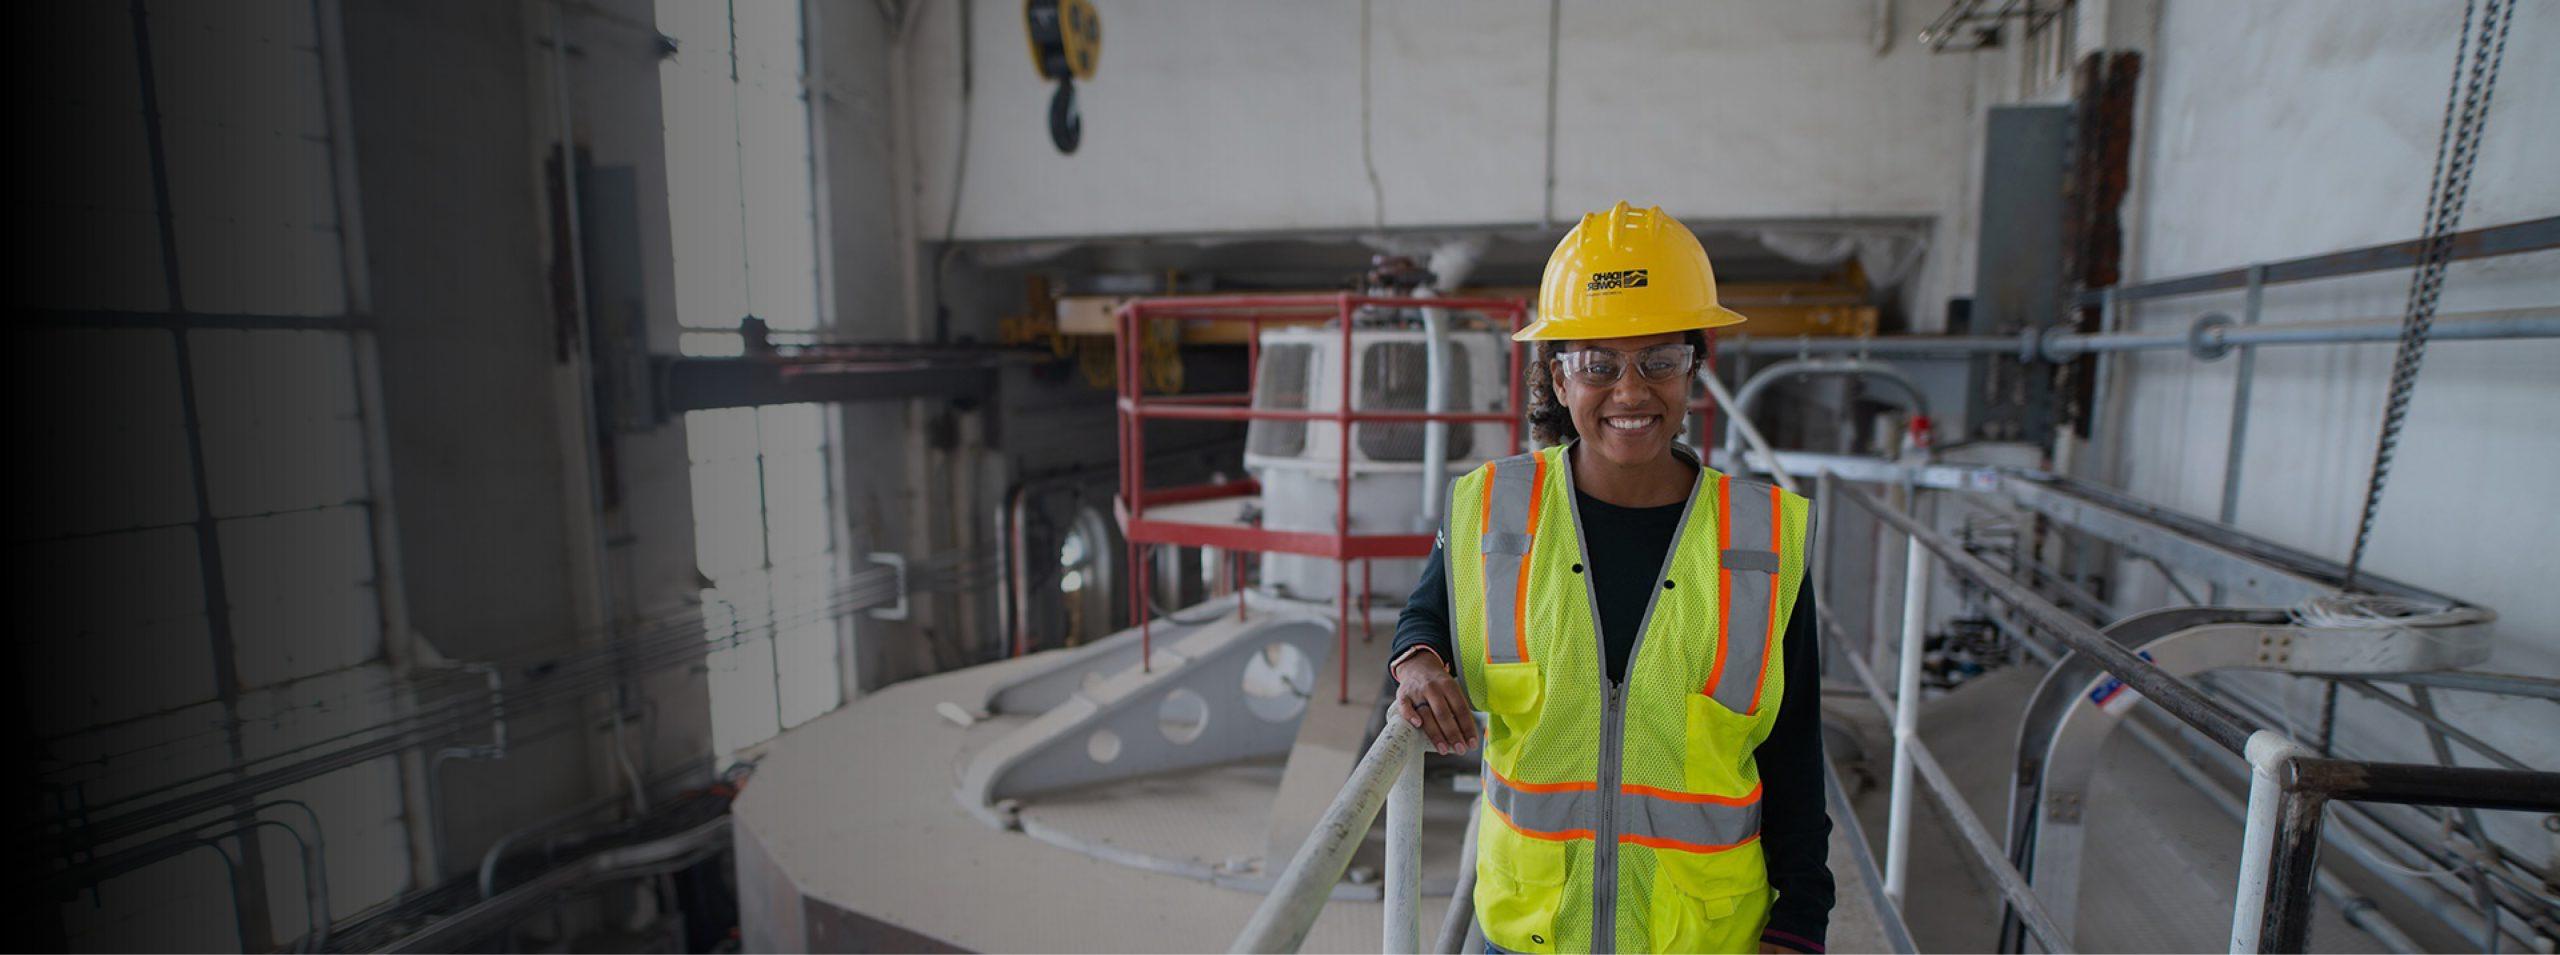 图为一名爱达荷州电力公司的女工程师在电厂工作